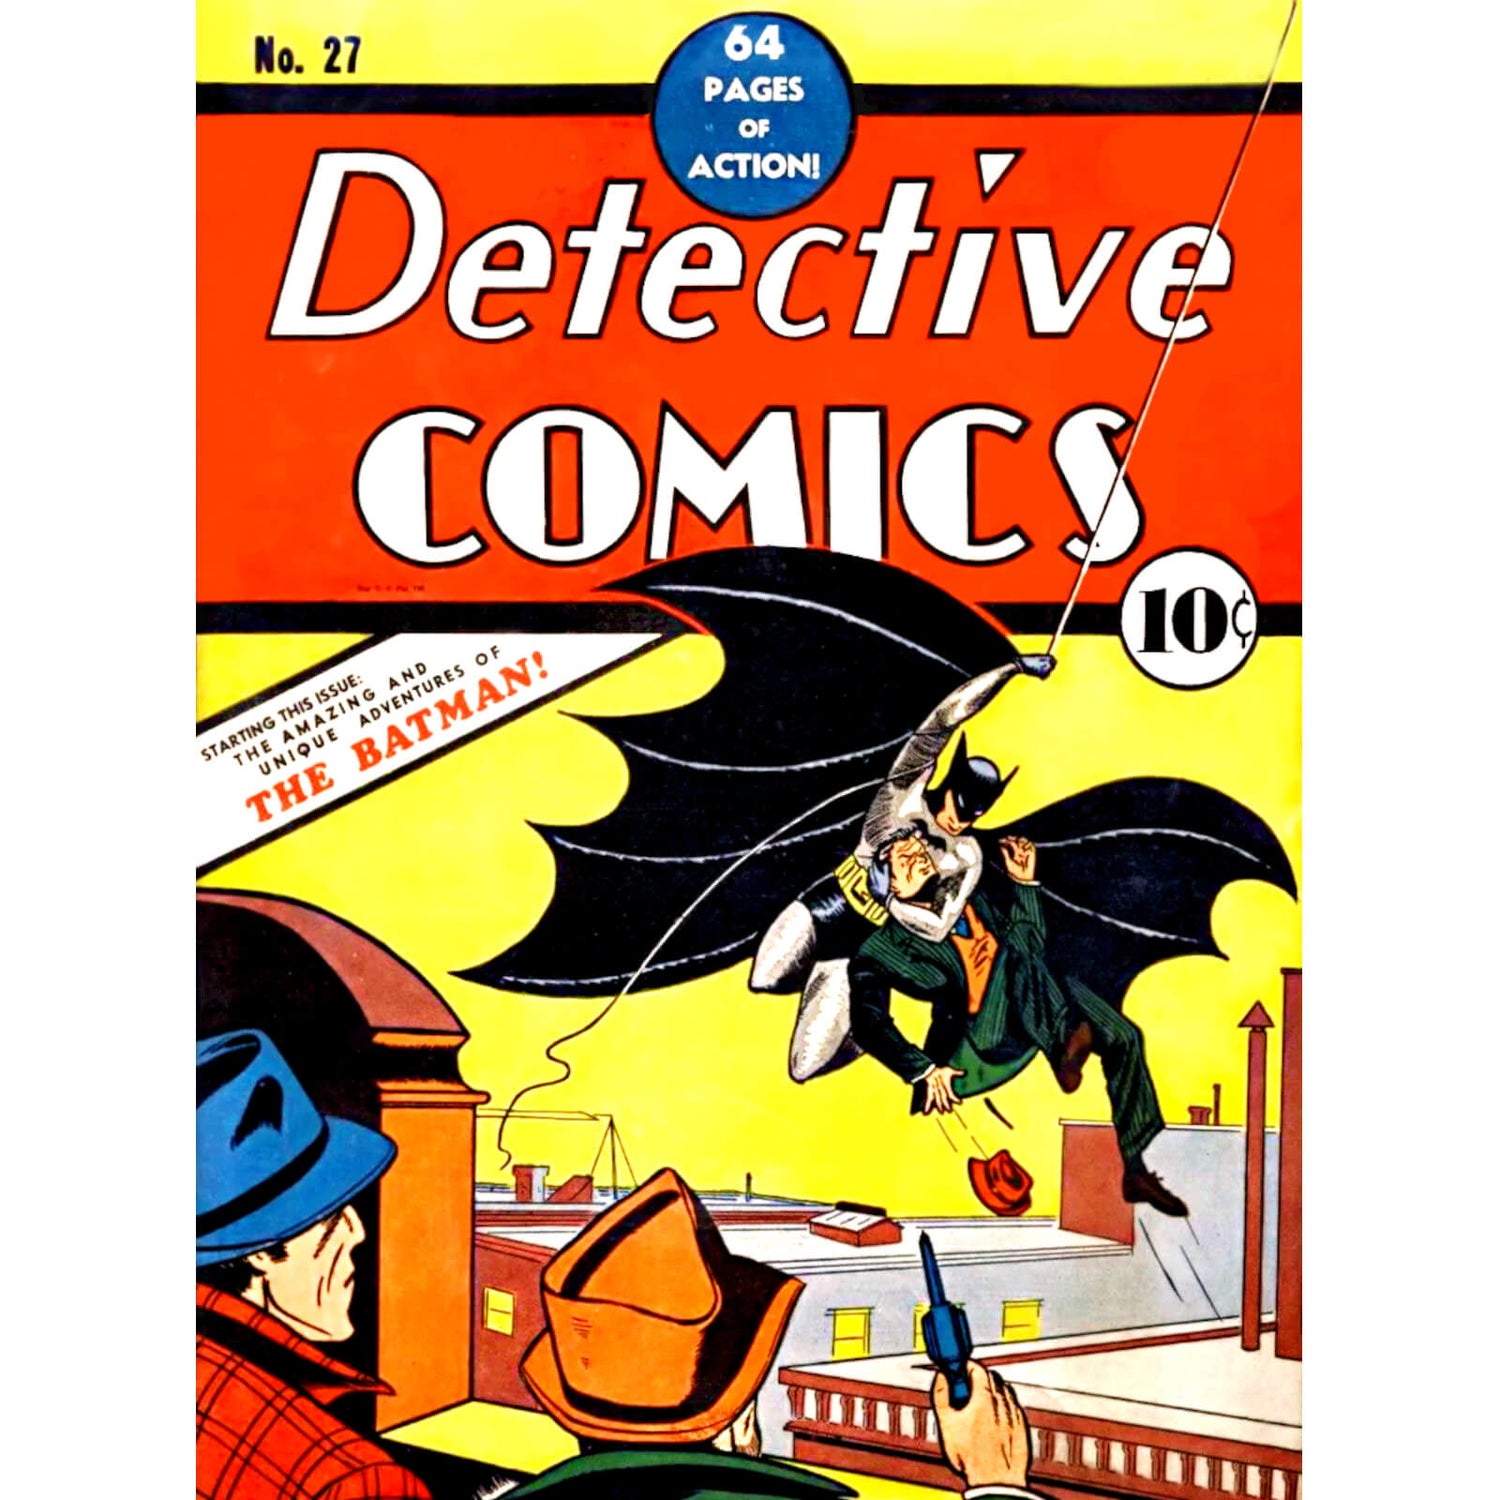 DC Comics Batman Detective Comics Tin Plate